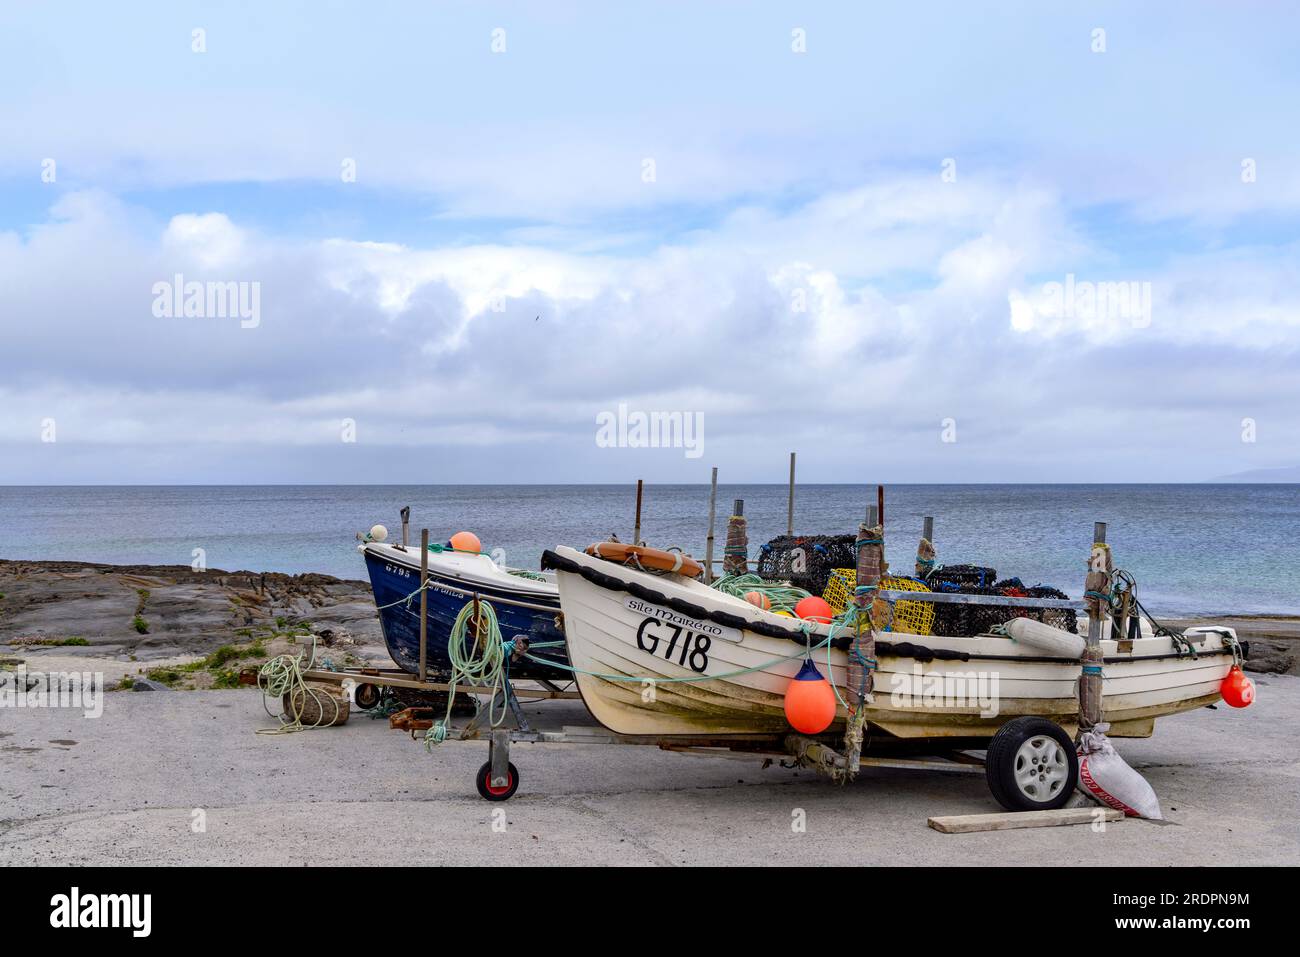 Barcos de pesca en la orilla de Inis Oirr o Inisheer, la más pequeña de las tres islas Aran, la bahía de Galway, Irlanda del Oeste. Foto de stock